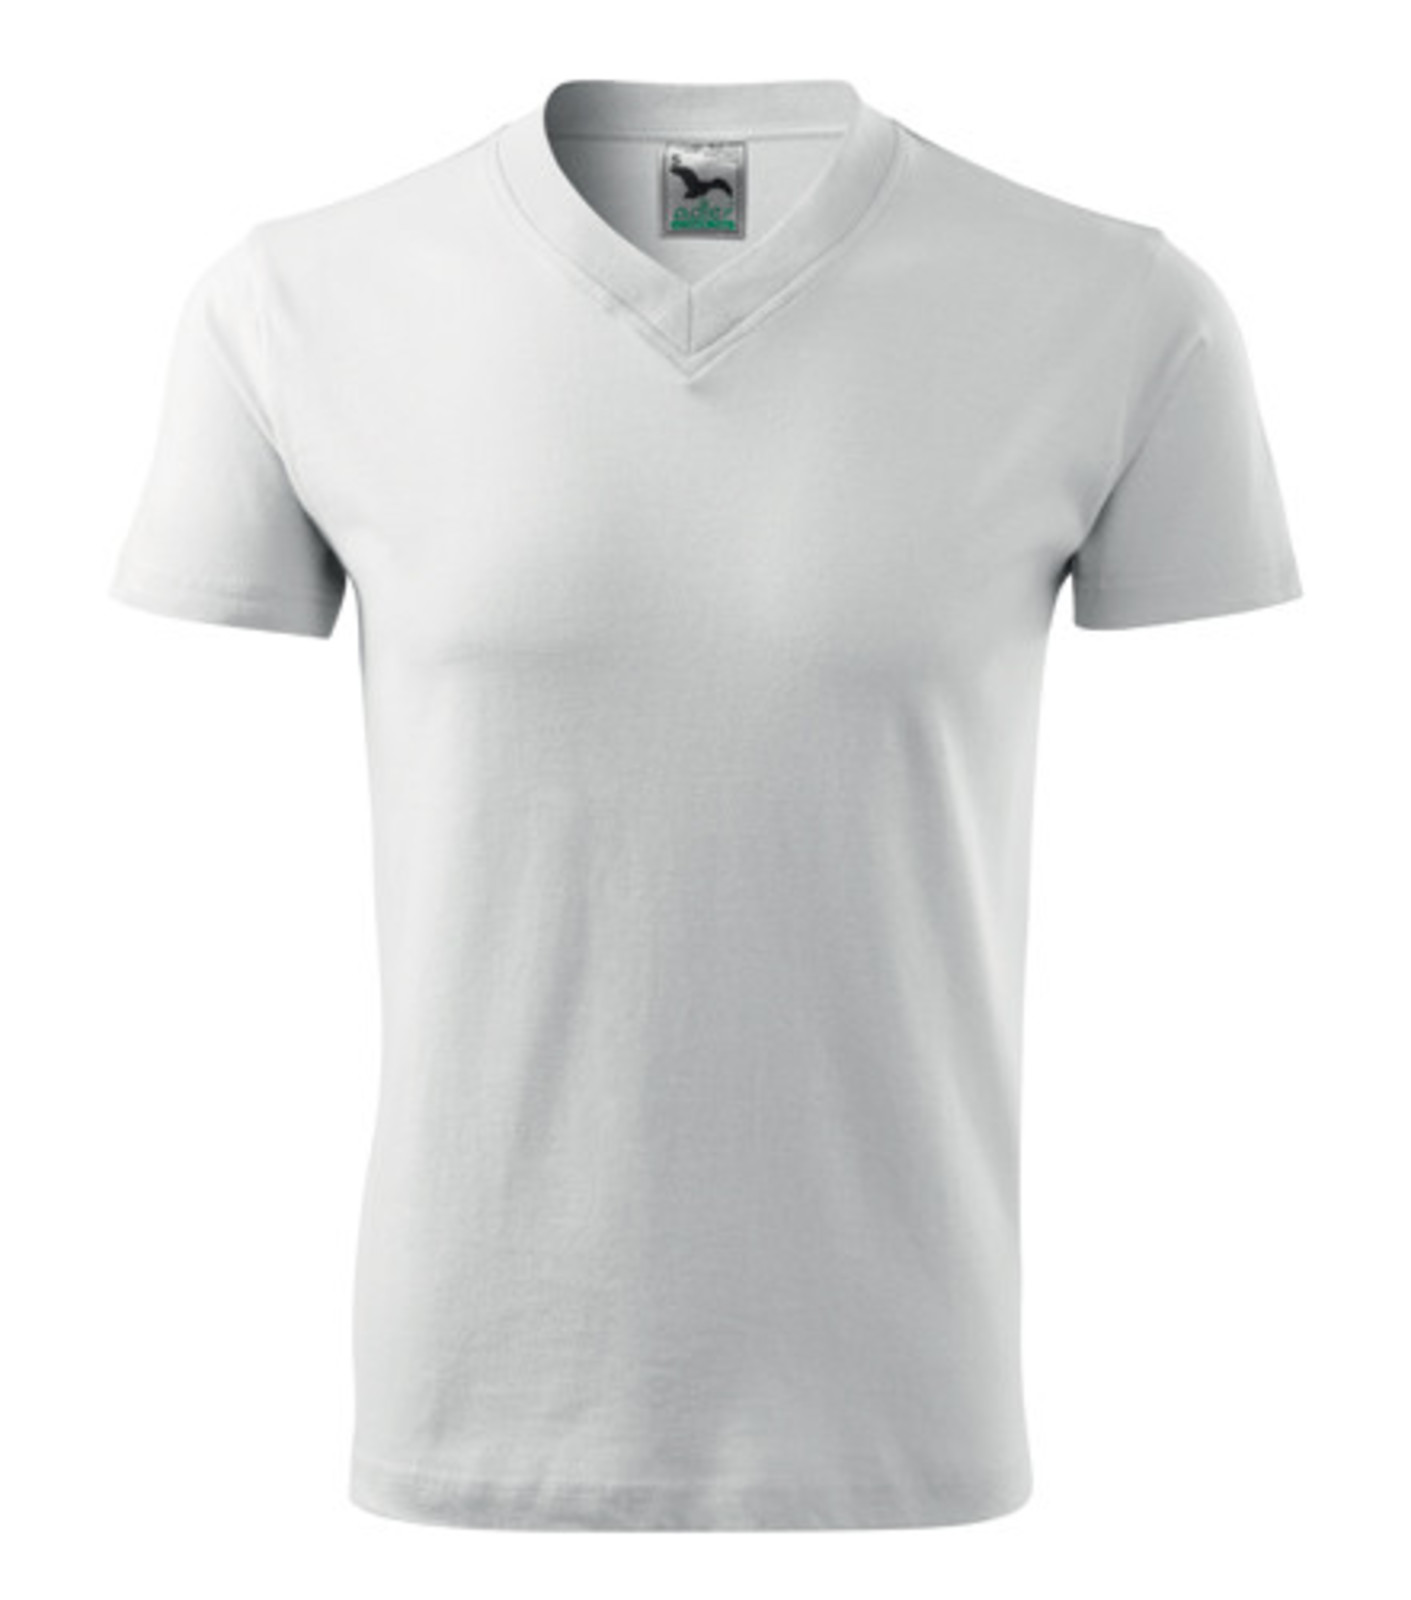 Unisex tričko s výstrihom Adler V-Neck 102 - veľkosť: L, farba: biela